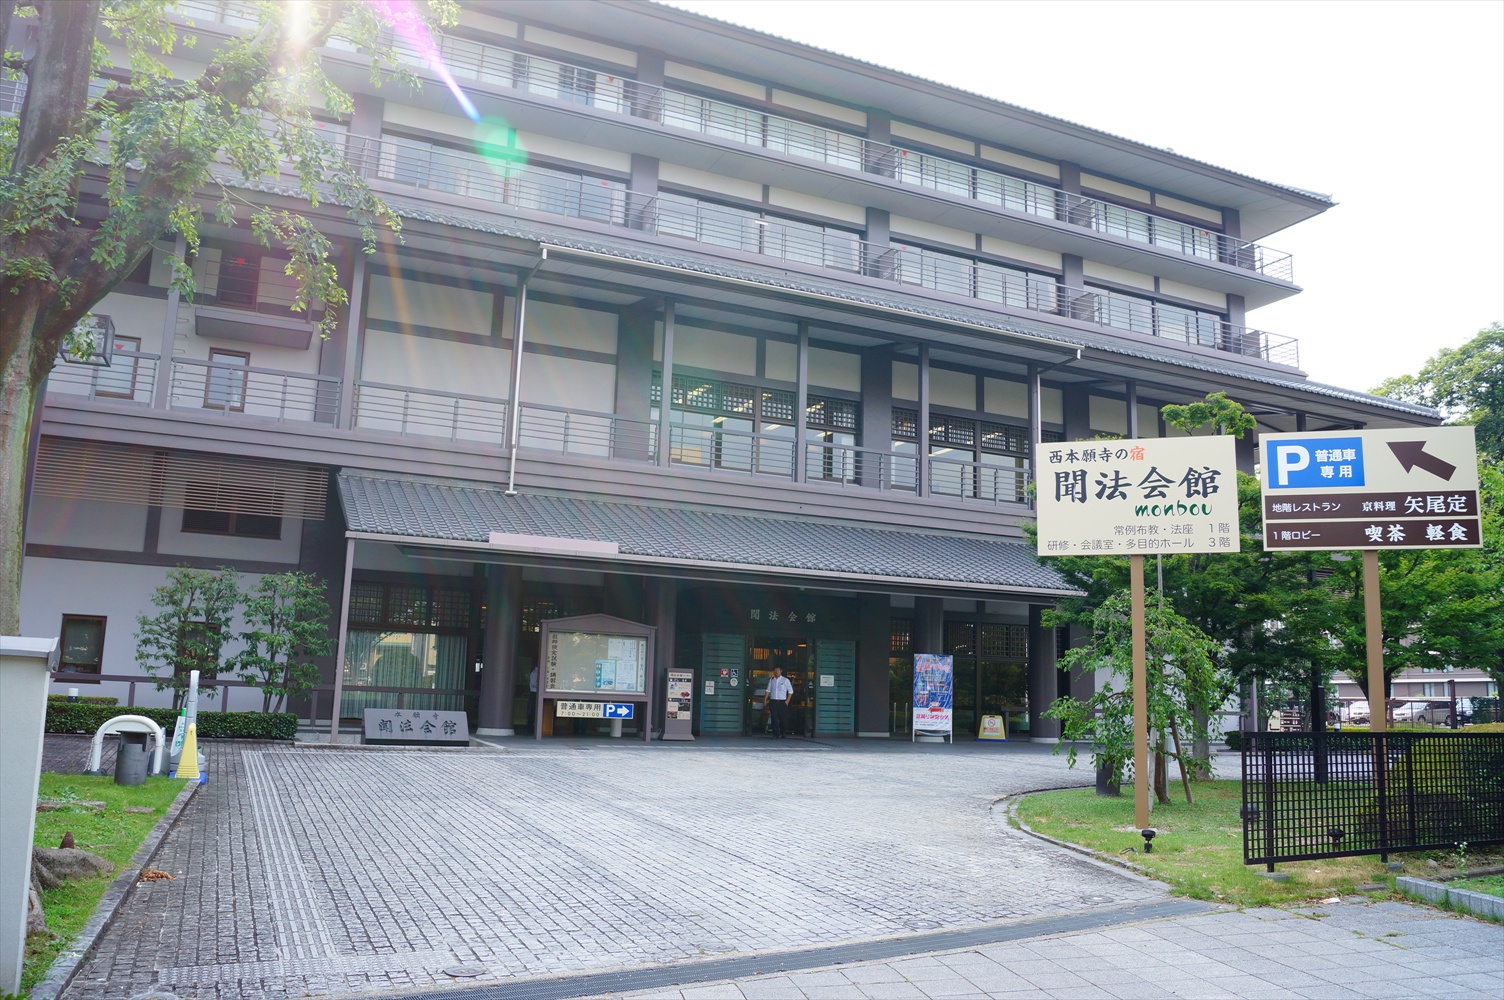 西本願寺周辺の宿泊施設 ホテル について アクセスに便利な おすすめのホテルを紹介します 関西のお勧めスポットのアクセス方法と楽しみ方関西のお勧めスポットのアクセス方法と楽しみ方